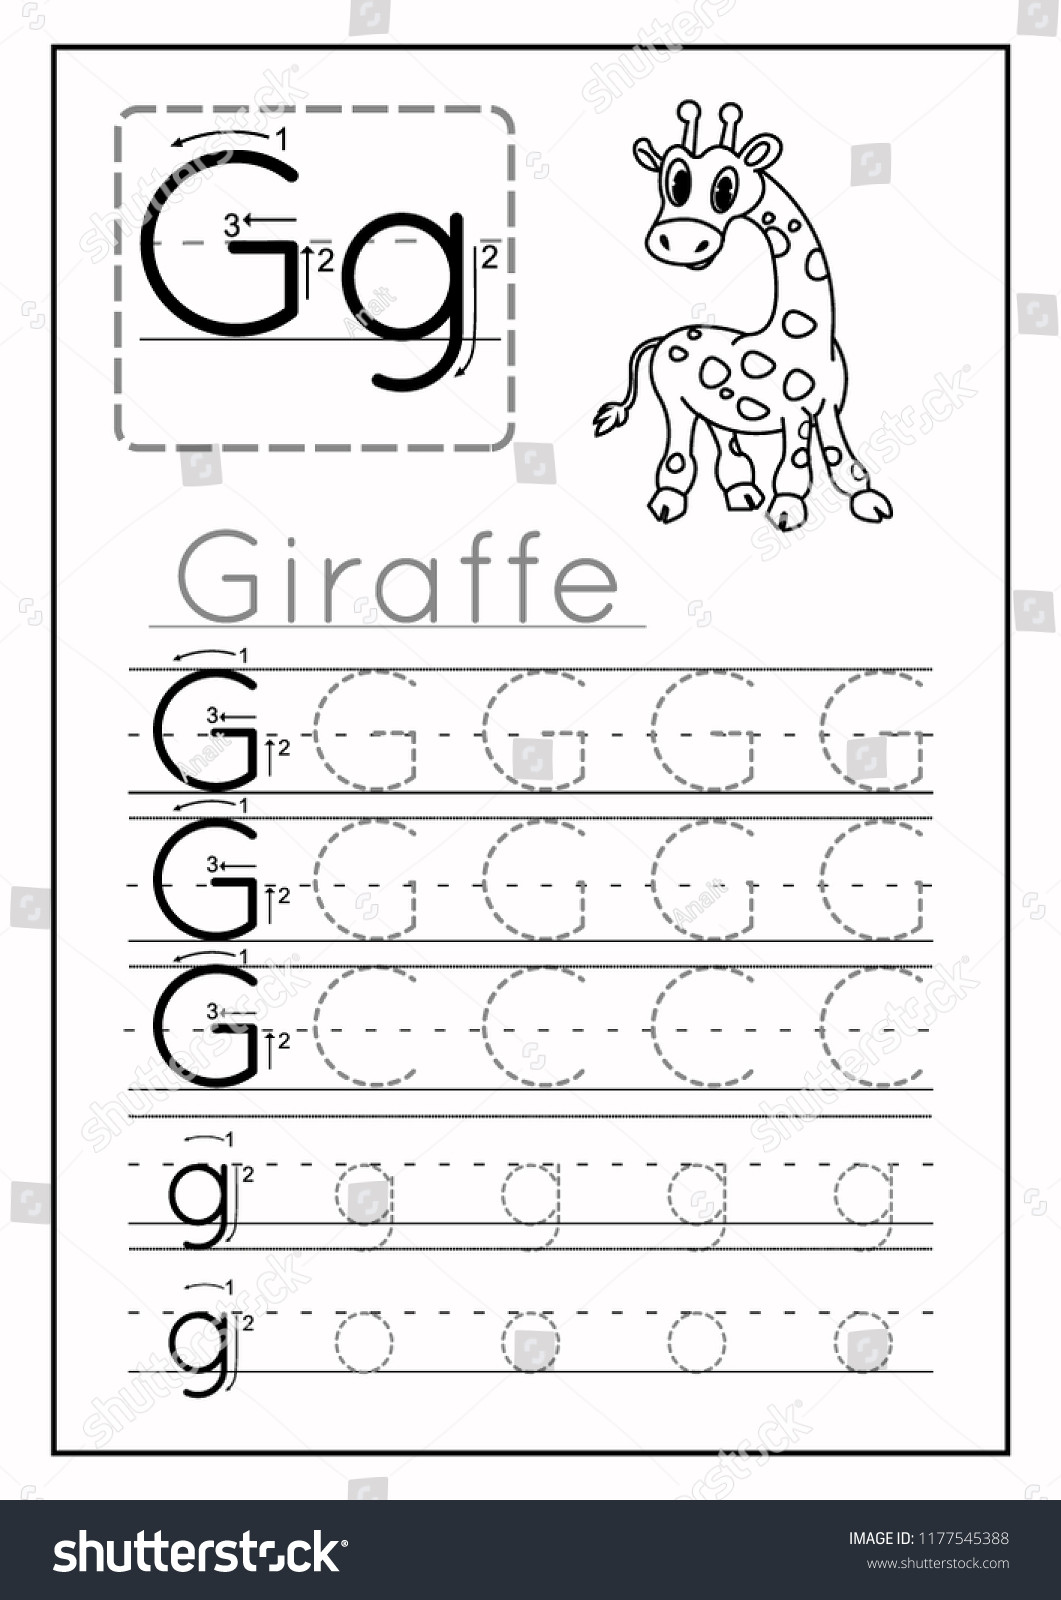 Letter G Worksheets for Kindergarten Writing Practice Letter G Printable Worksheet à¹à¸§à¸à¹à¸à¸­à¸£à¹à¸ªà¸à¹à¸­à¸